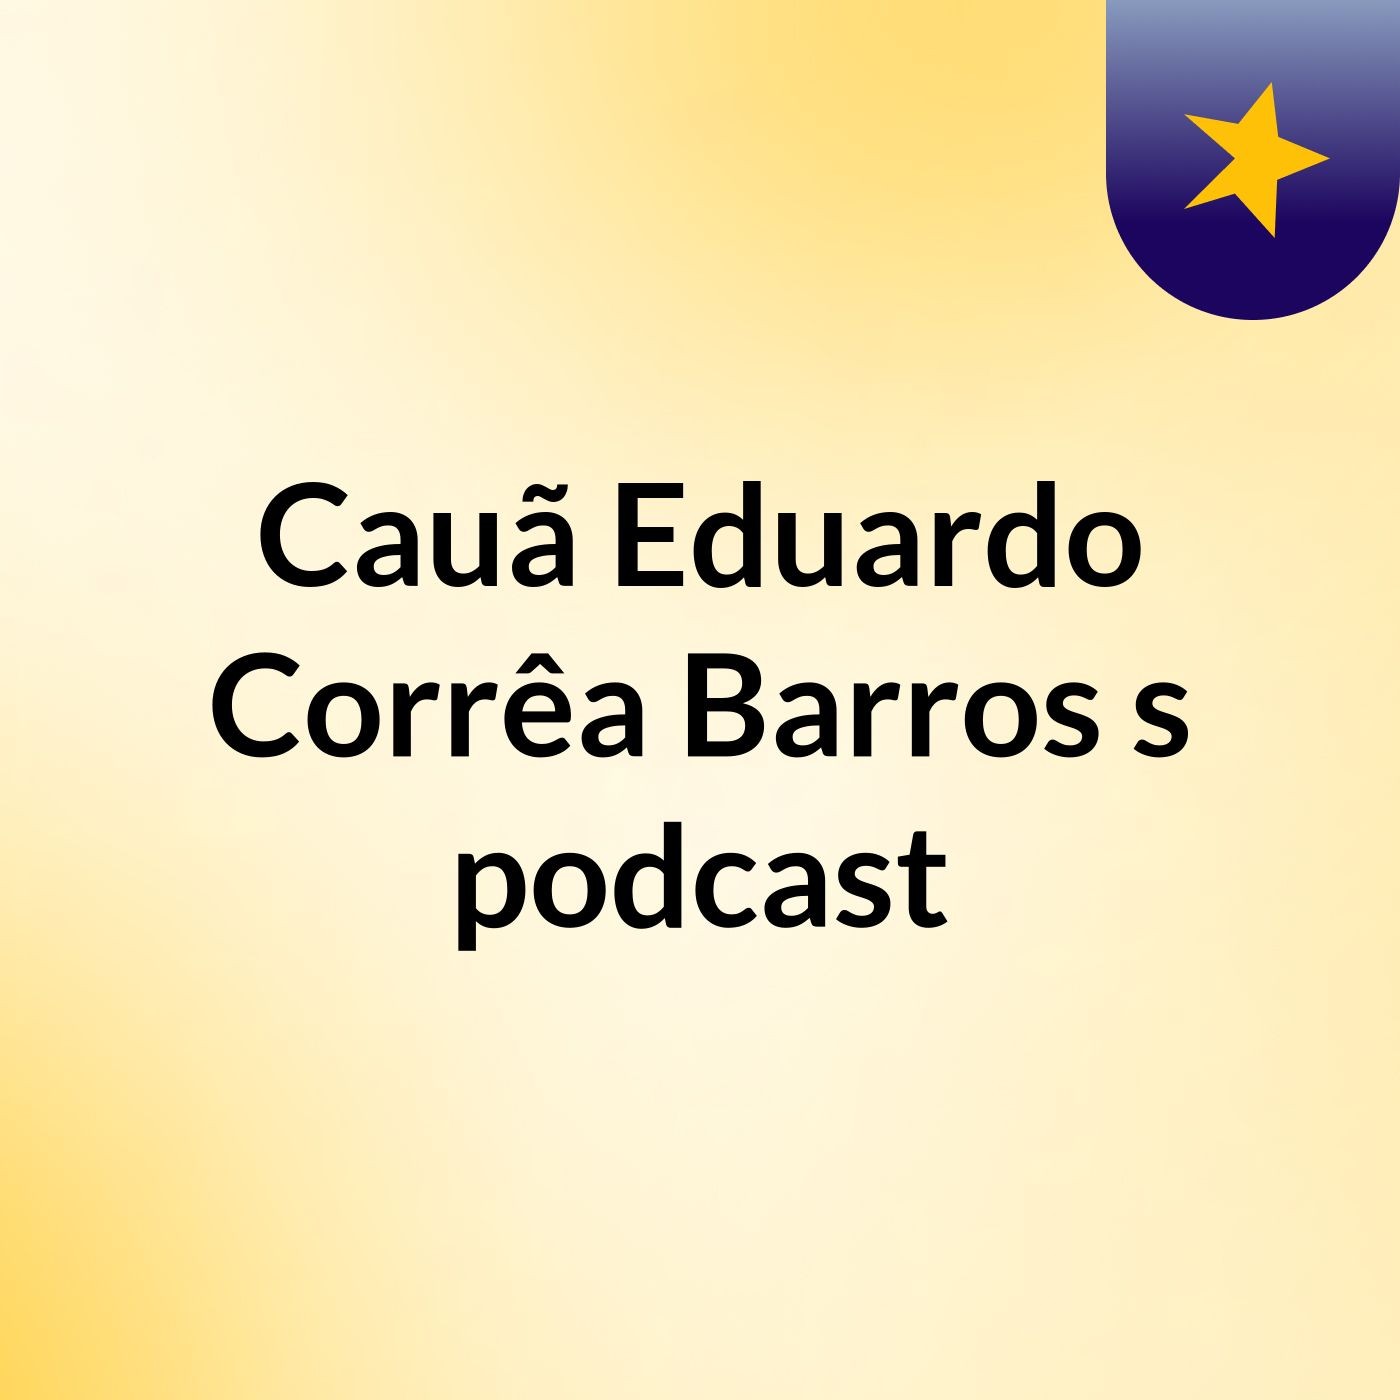 Cauã Eduardo Corrêa Barros's podcast